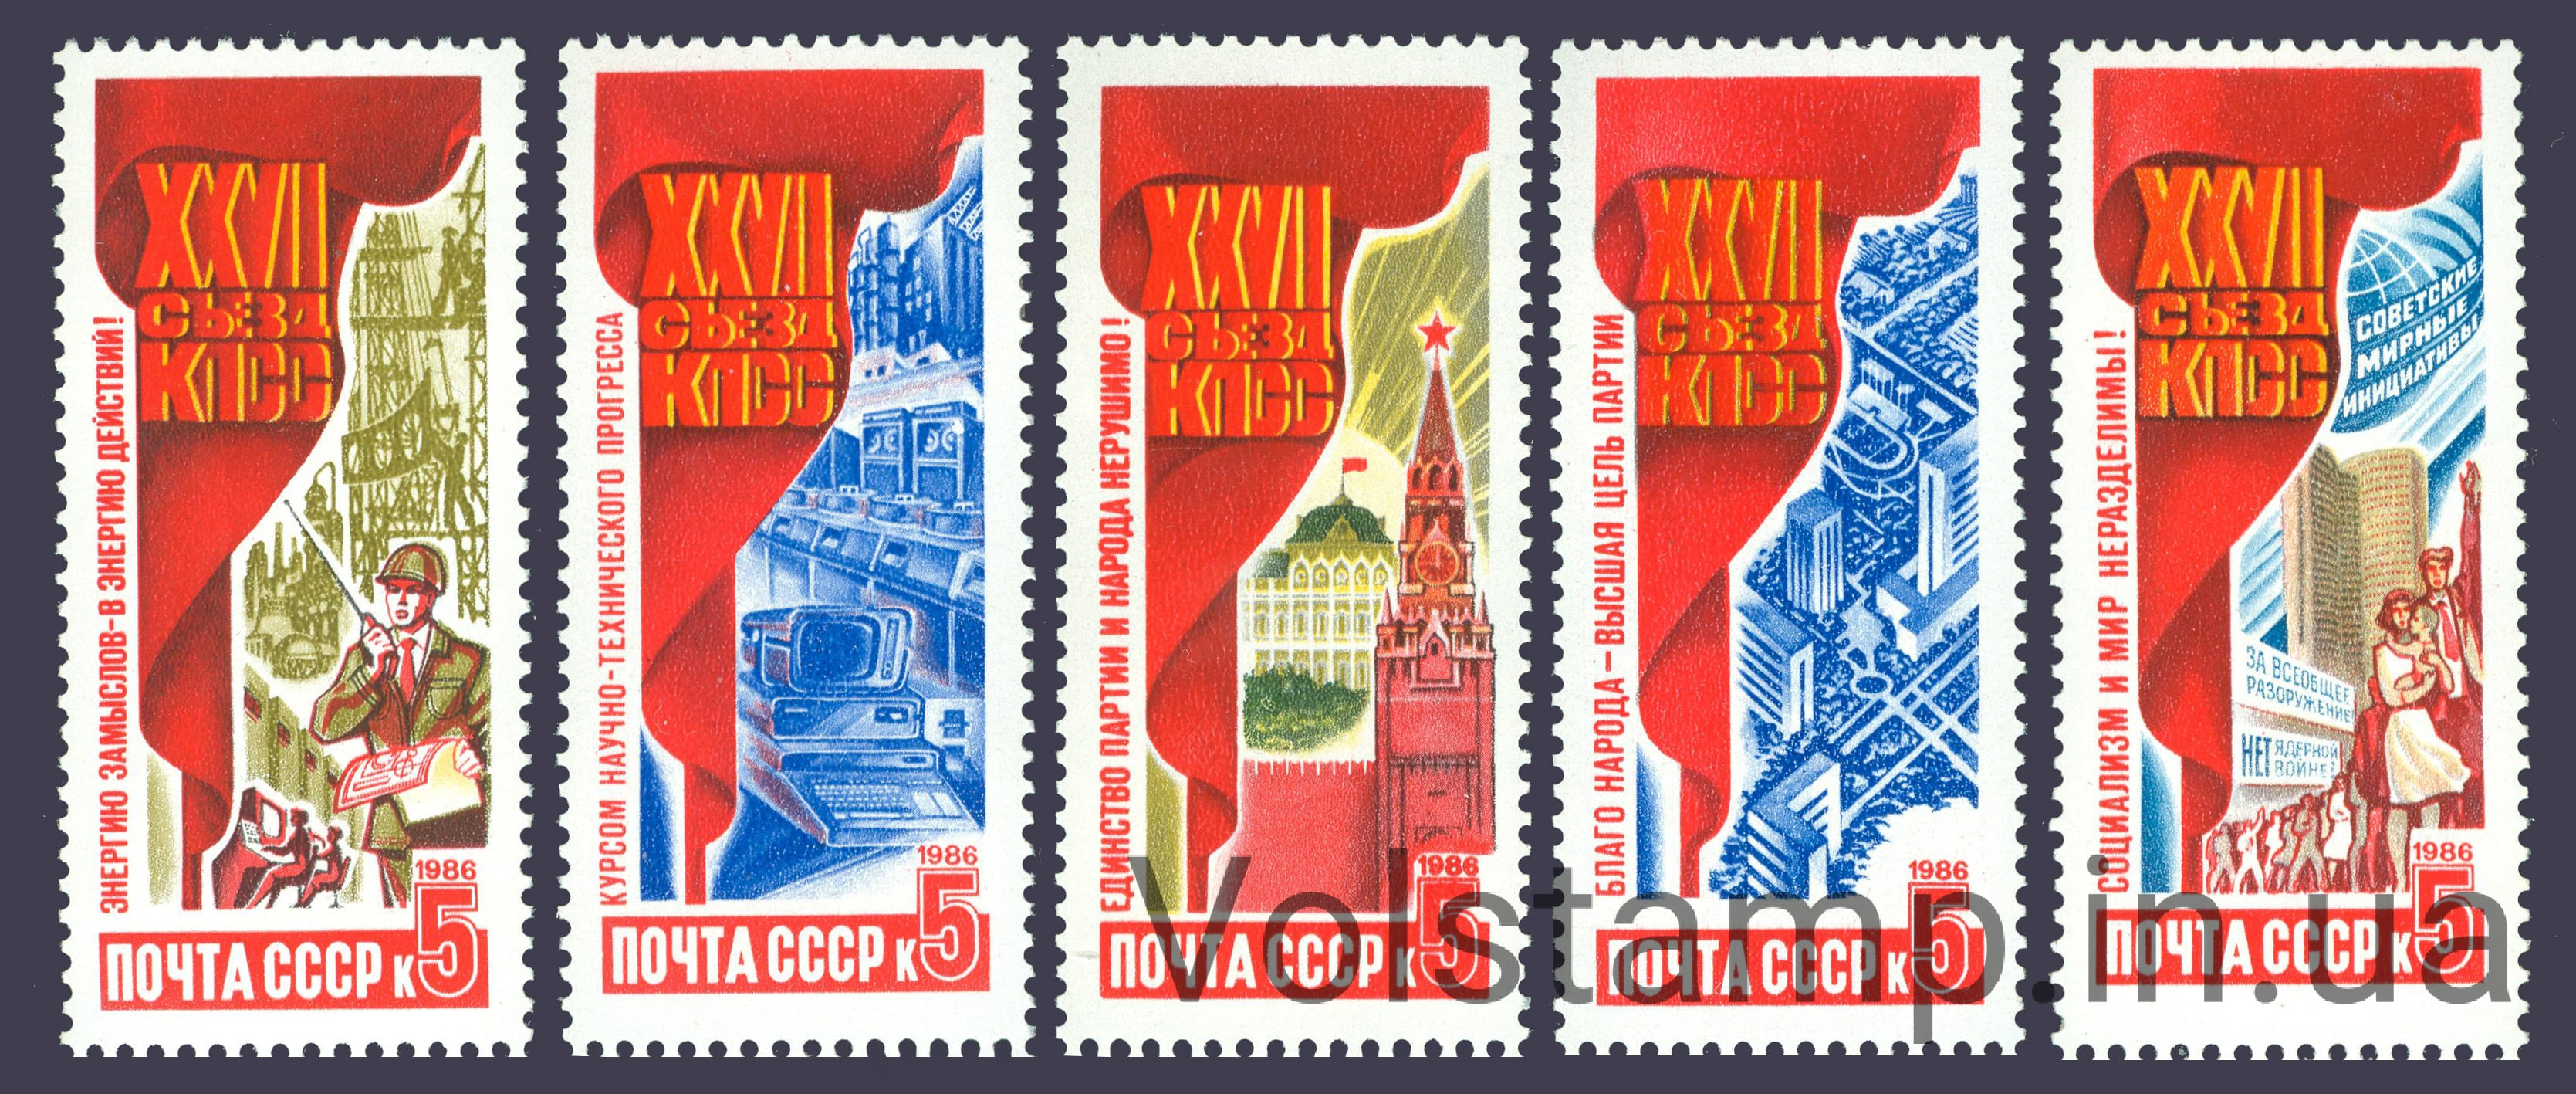 1986 серия марок Решения XXVII съезда КПСС в жизнь! №5717-5721